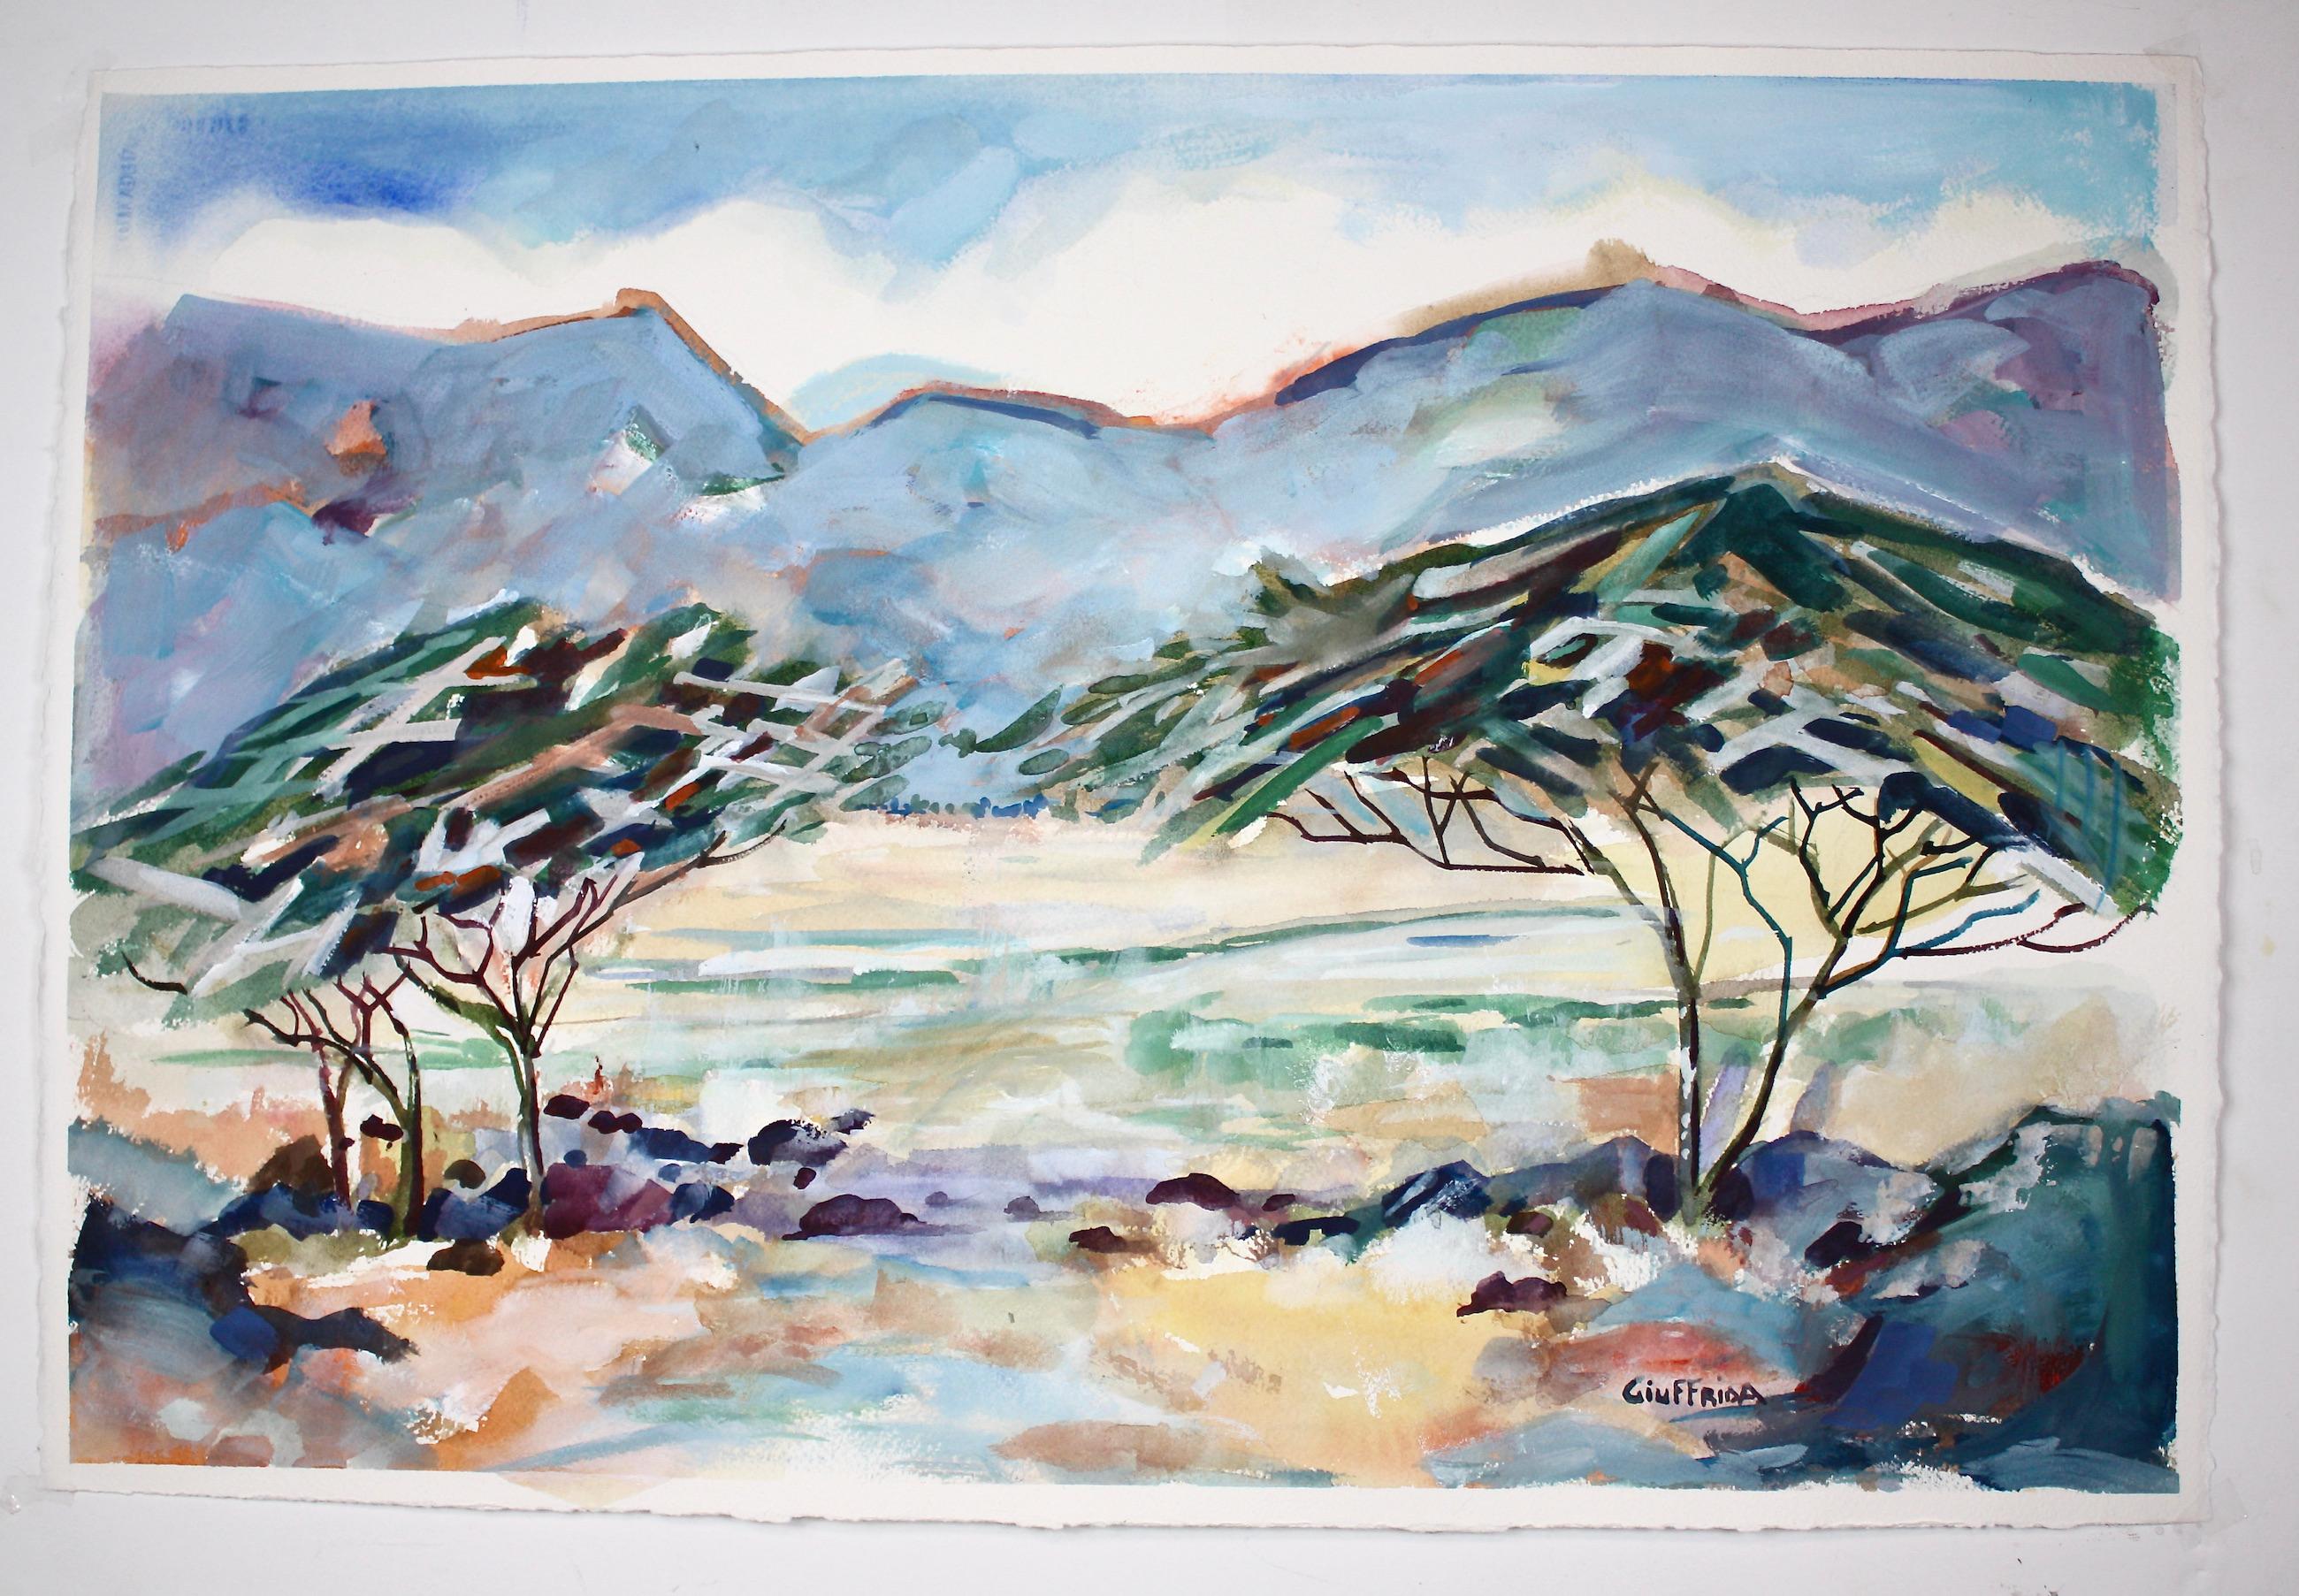 <p>Commentaires de l'artiste<br>L'artiste Joe Giuffrida présente une vue expressionniste de deux acacias. Il capture la beauté des auvents avec des éléments de design texturés et colorés. Les bandes de couleur hachurées font ressortir le feuillage